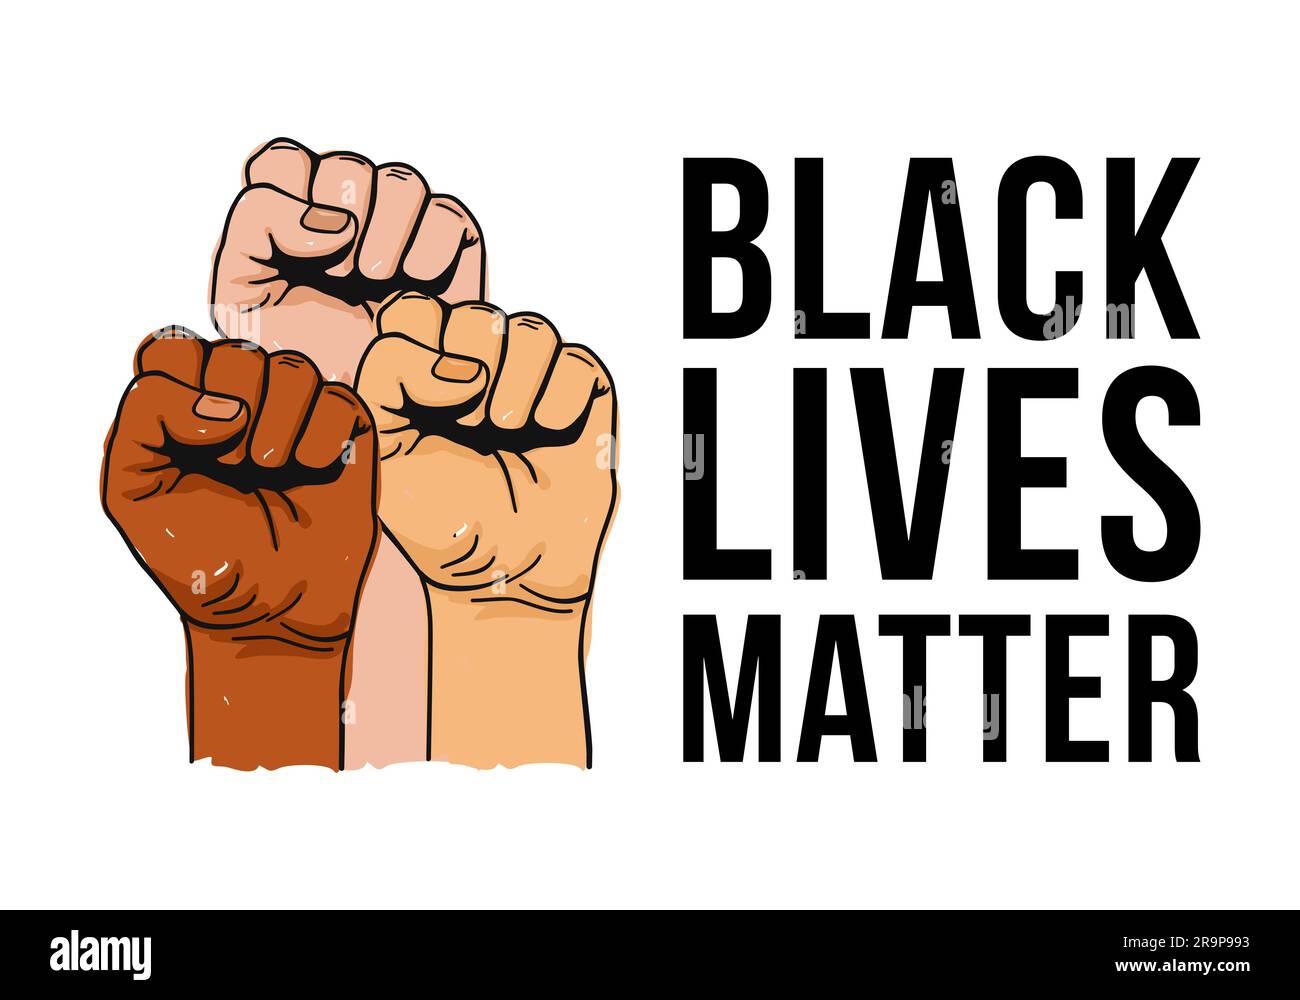 Illustrazione vettoriale del testo Black Lives Matter, pugni stringuti tenuti in alto per protesta. Mani alzate isolate. Concetto di diritti umani e uguaglianza. STIC Illustrazione Vettoriale